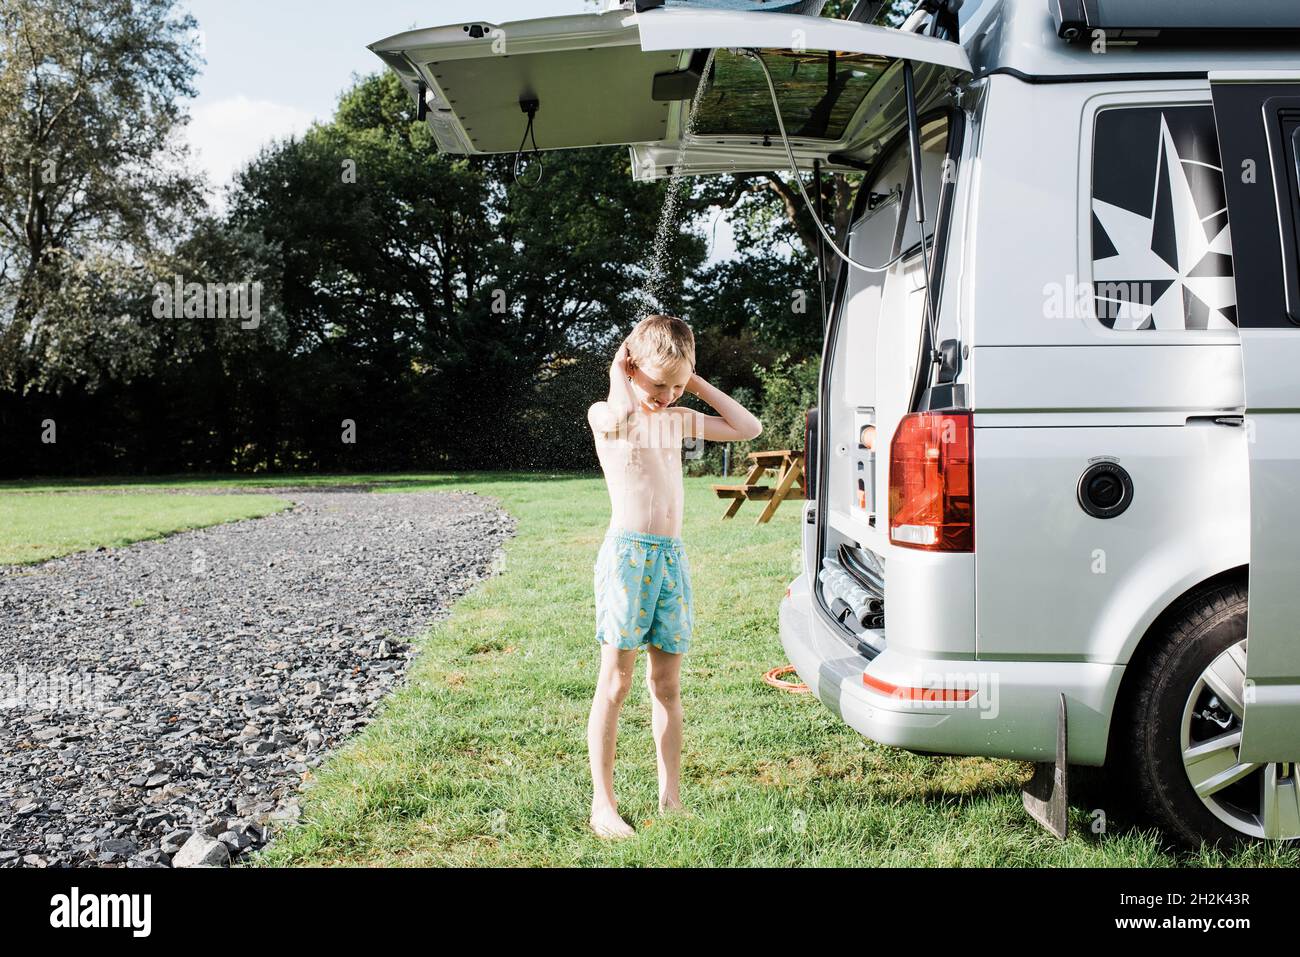 Camping shower immagini e fotografie stock ad alta risoluzione - Alamy